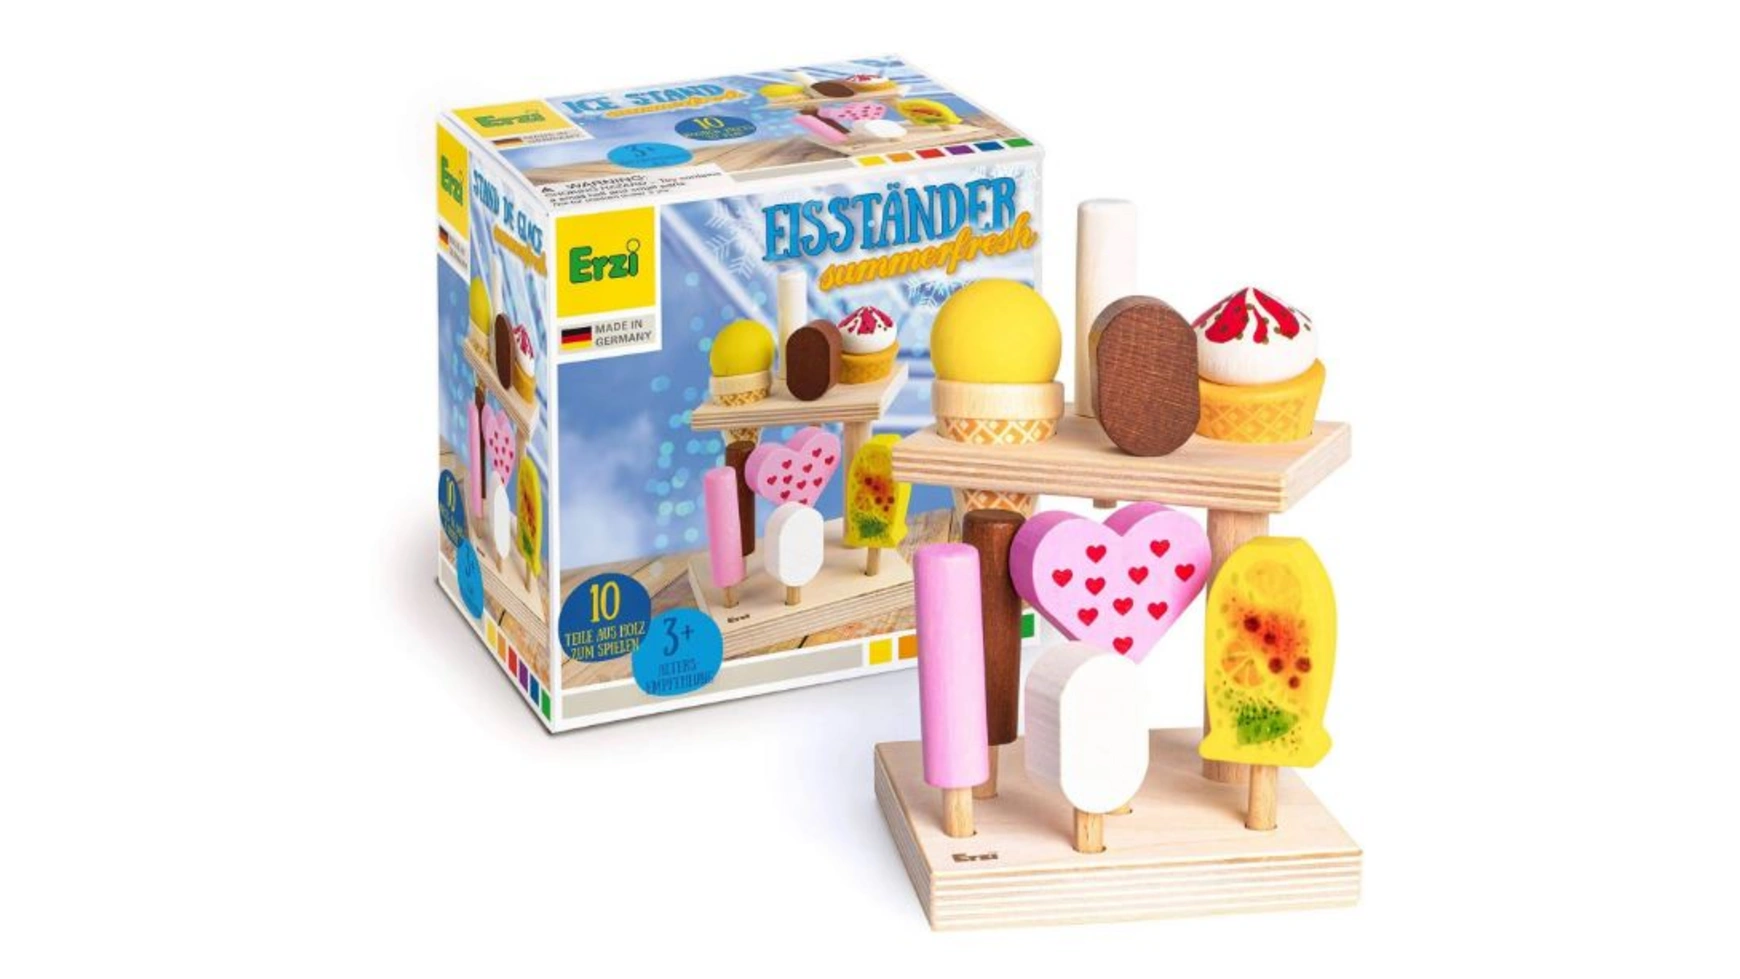 Erzi Стенд с мороженым Summerfresh, детский магазин и игровые кухонные аксессуары